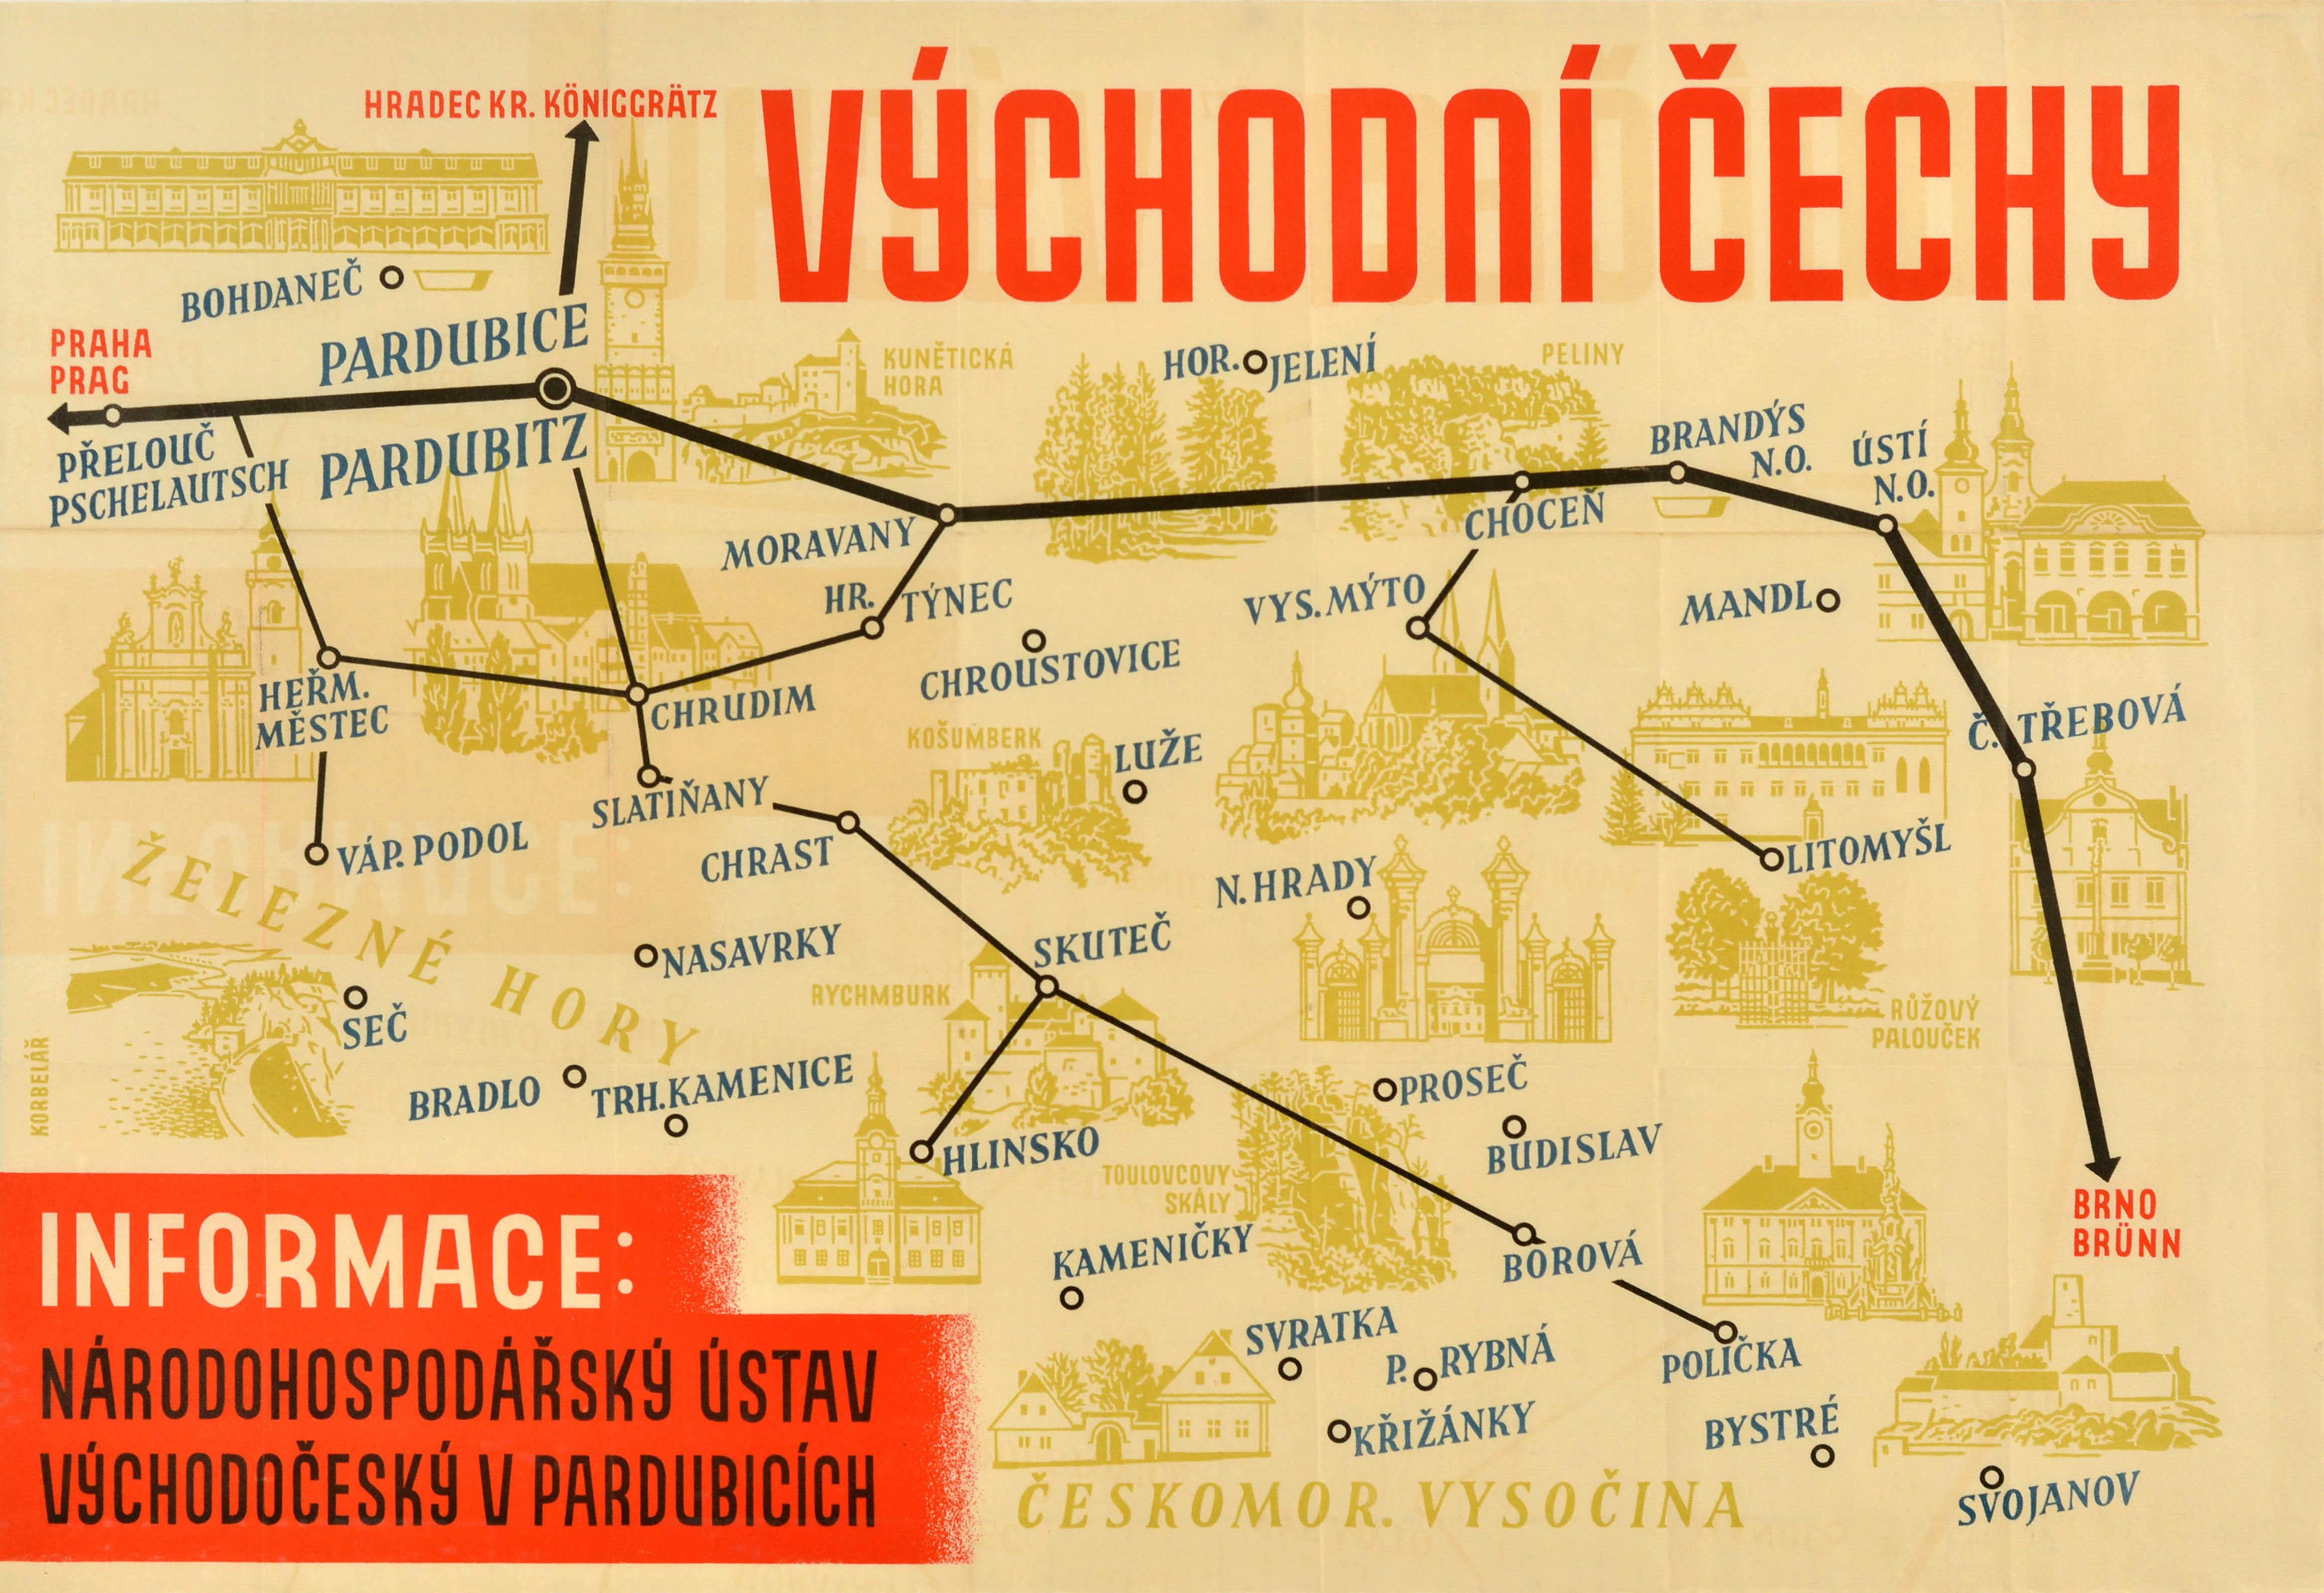 Originale Vintage-Reisekarte für Ostböhmen / Vychodni Cechy mit Routenlinien durch das Gebiet, die Städte und Orte miteinander verbinden, mit Abbildungen von Schlössern und anderen interessanten und historisch bedeutsamen Gebäuden, oben der Titel in